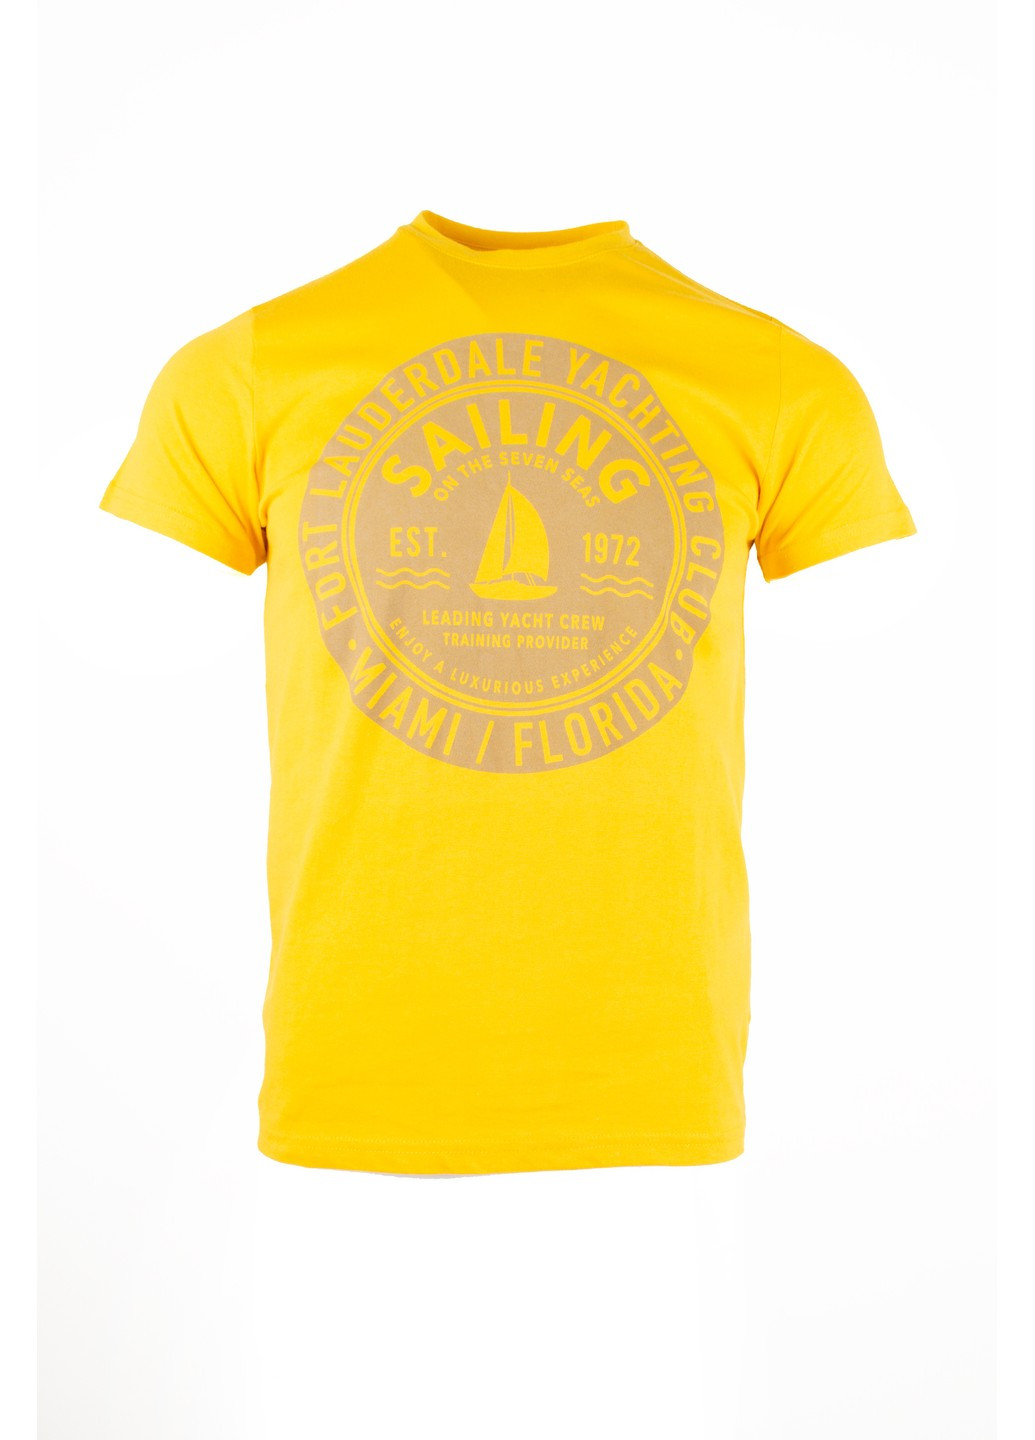 Желтая футболка мужская желтая 070821-001592 Fine Look